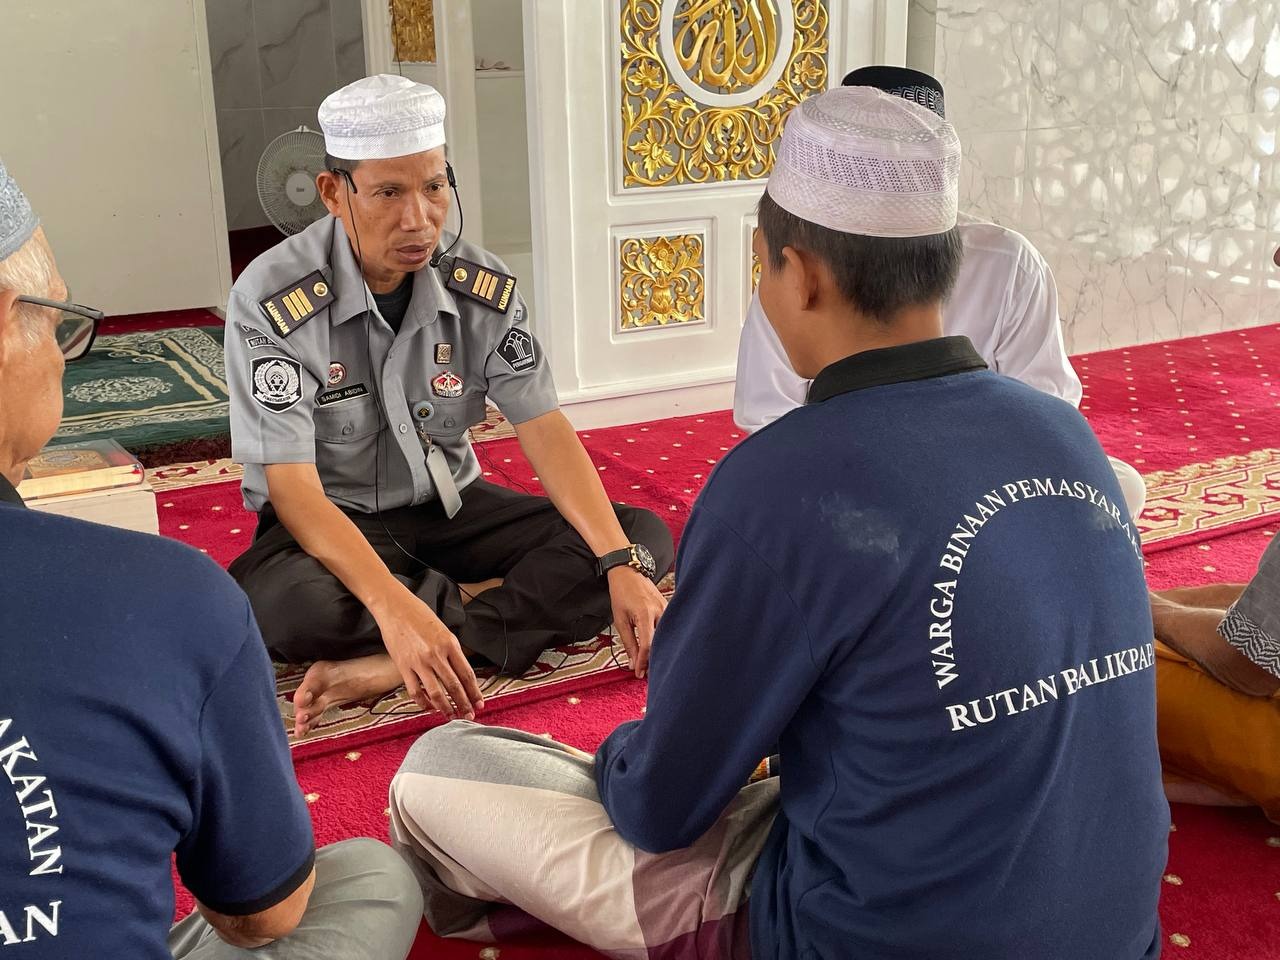 Perubahan yang Menyentuh Hati, Warga Binaan Rutan Balikpapan Temukan Tujuan Hidup Baru dengan Memeluk Islam